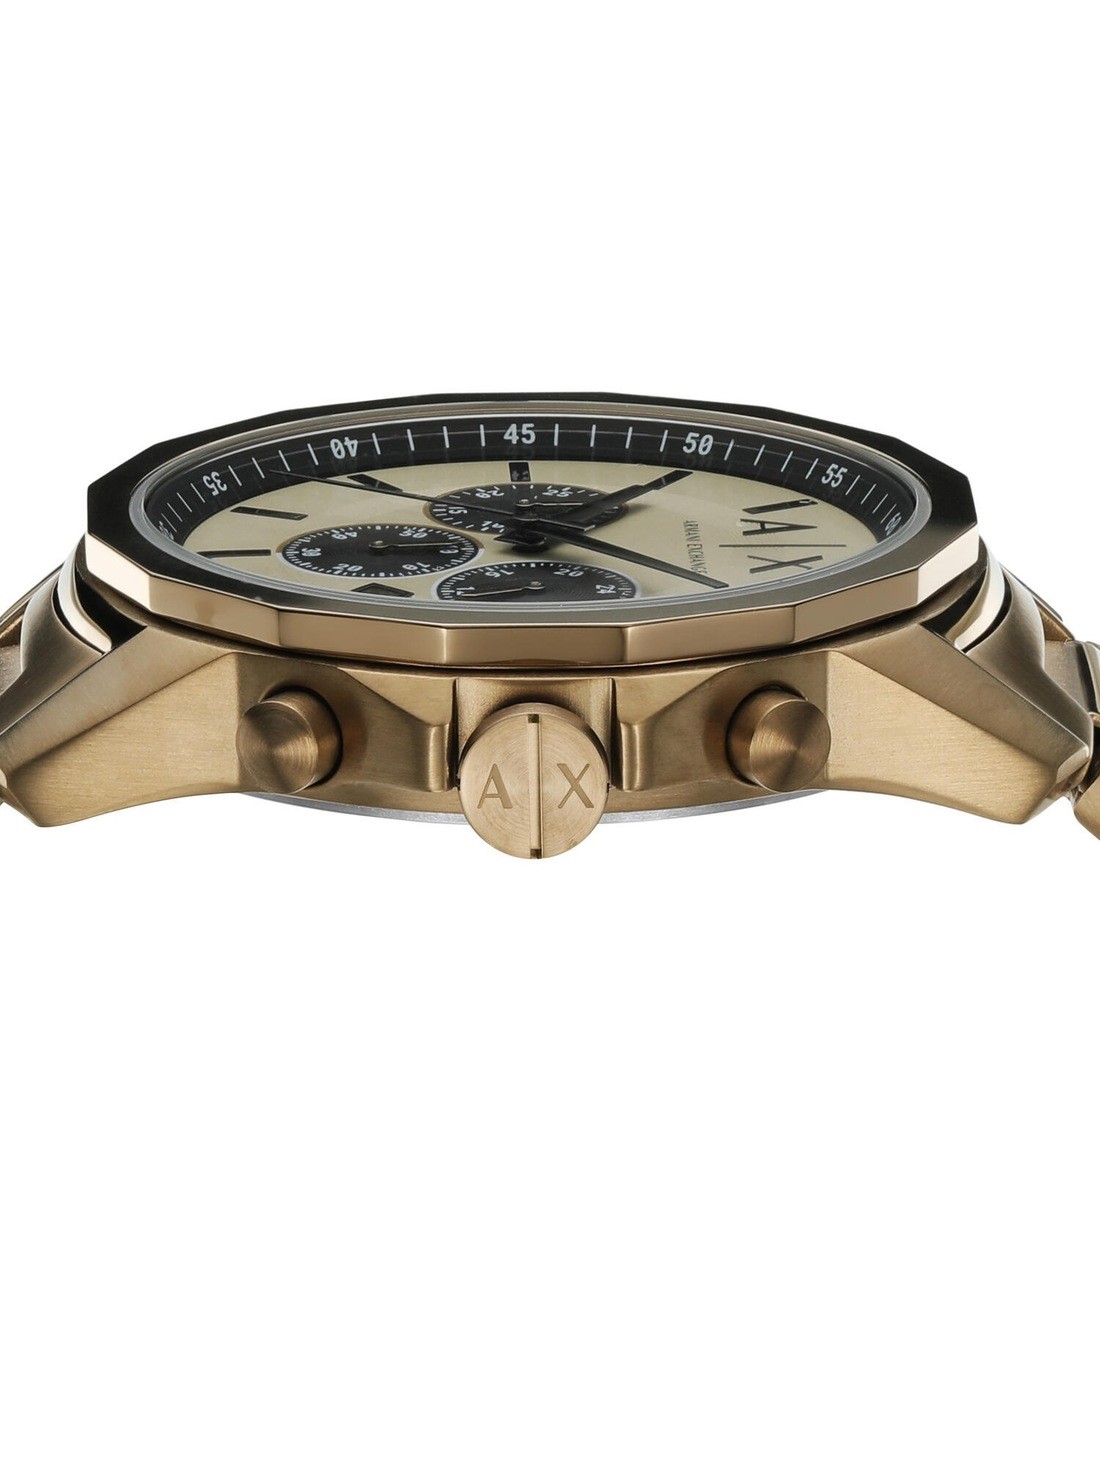 Armani Exchange Black Dial Gold PVD Men's Watch AX2122 - Walmart.com